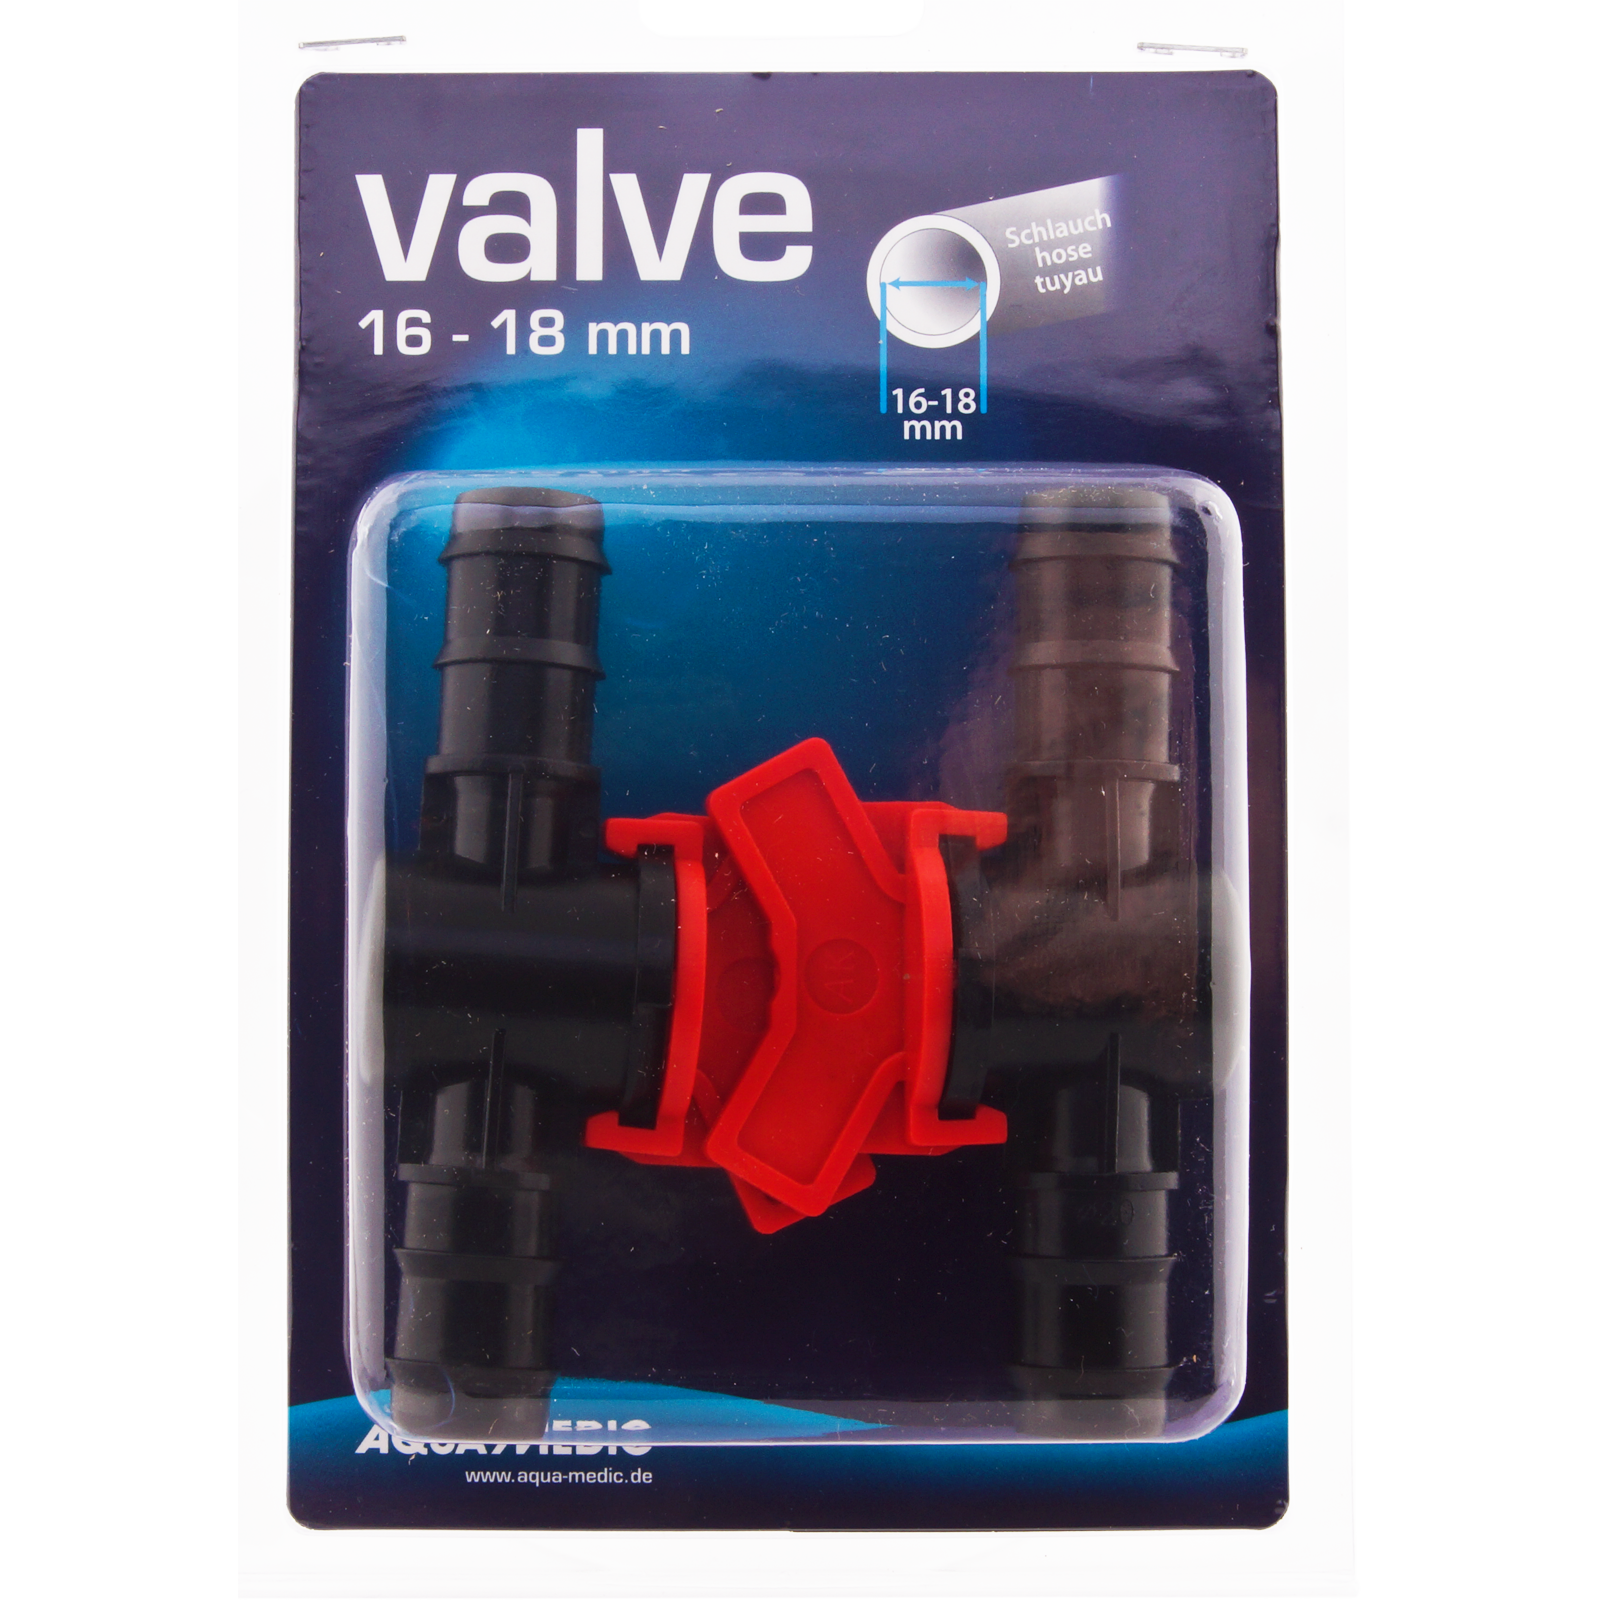 AQUA MEDIC Valve 16 - 18 mm lot de 2 robinets un quart de tour pour tuyau souple 16/22 mm